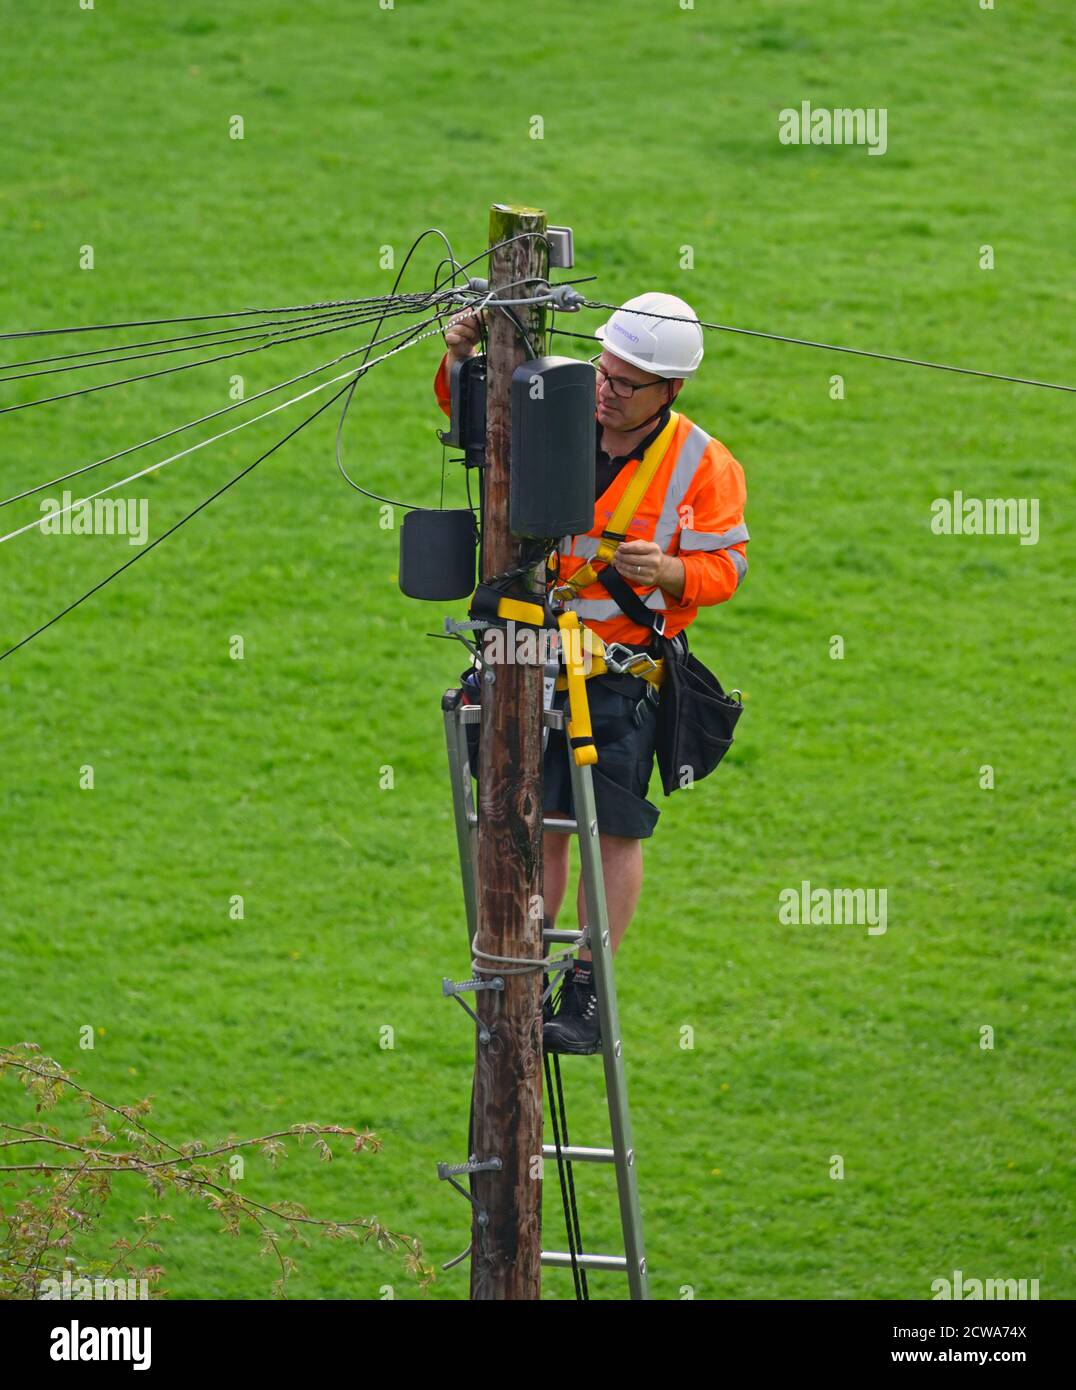 Openreach ingegnere sulla scala in cima al palo di legno, lavorando su apparecchiature di telecomunicazione. Bowling Fell, Kendal, Cumbria, Inghilterra, Regno Unito, Europa. Foto Stock